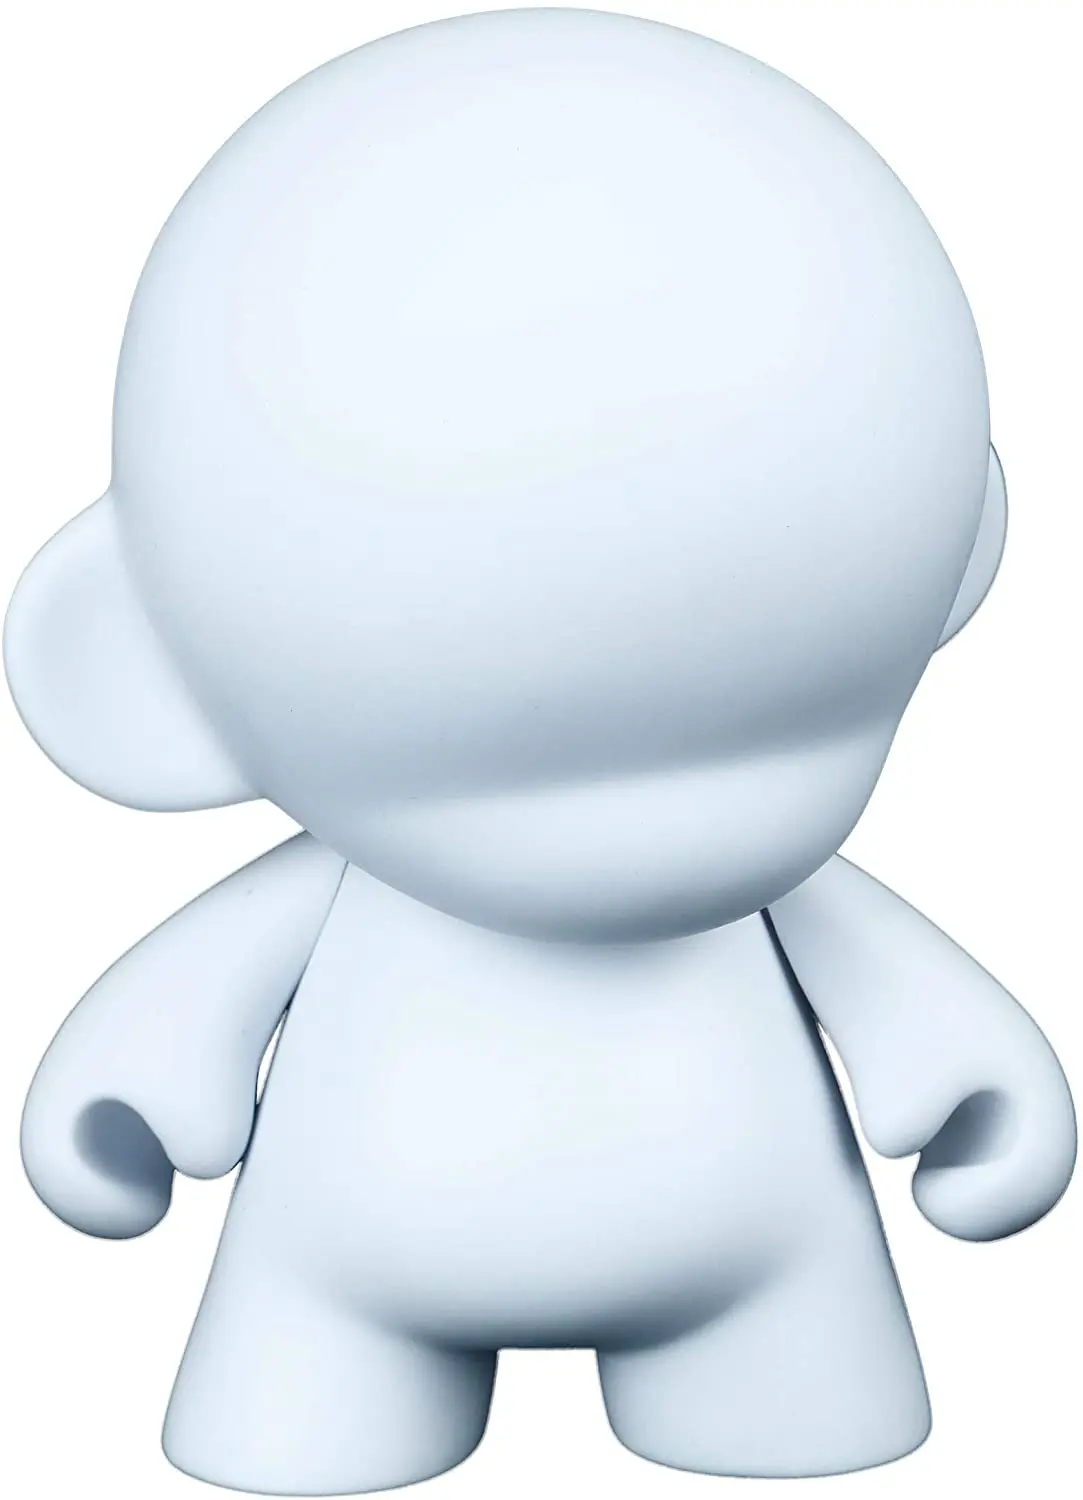 5 шт./лот 7 "Белые куклы Kidrobot Munny сделай сам, виниловые художественные фигурки, игрушки от AliExpress RU&CIS NEW